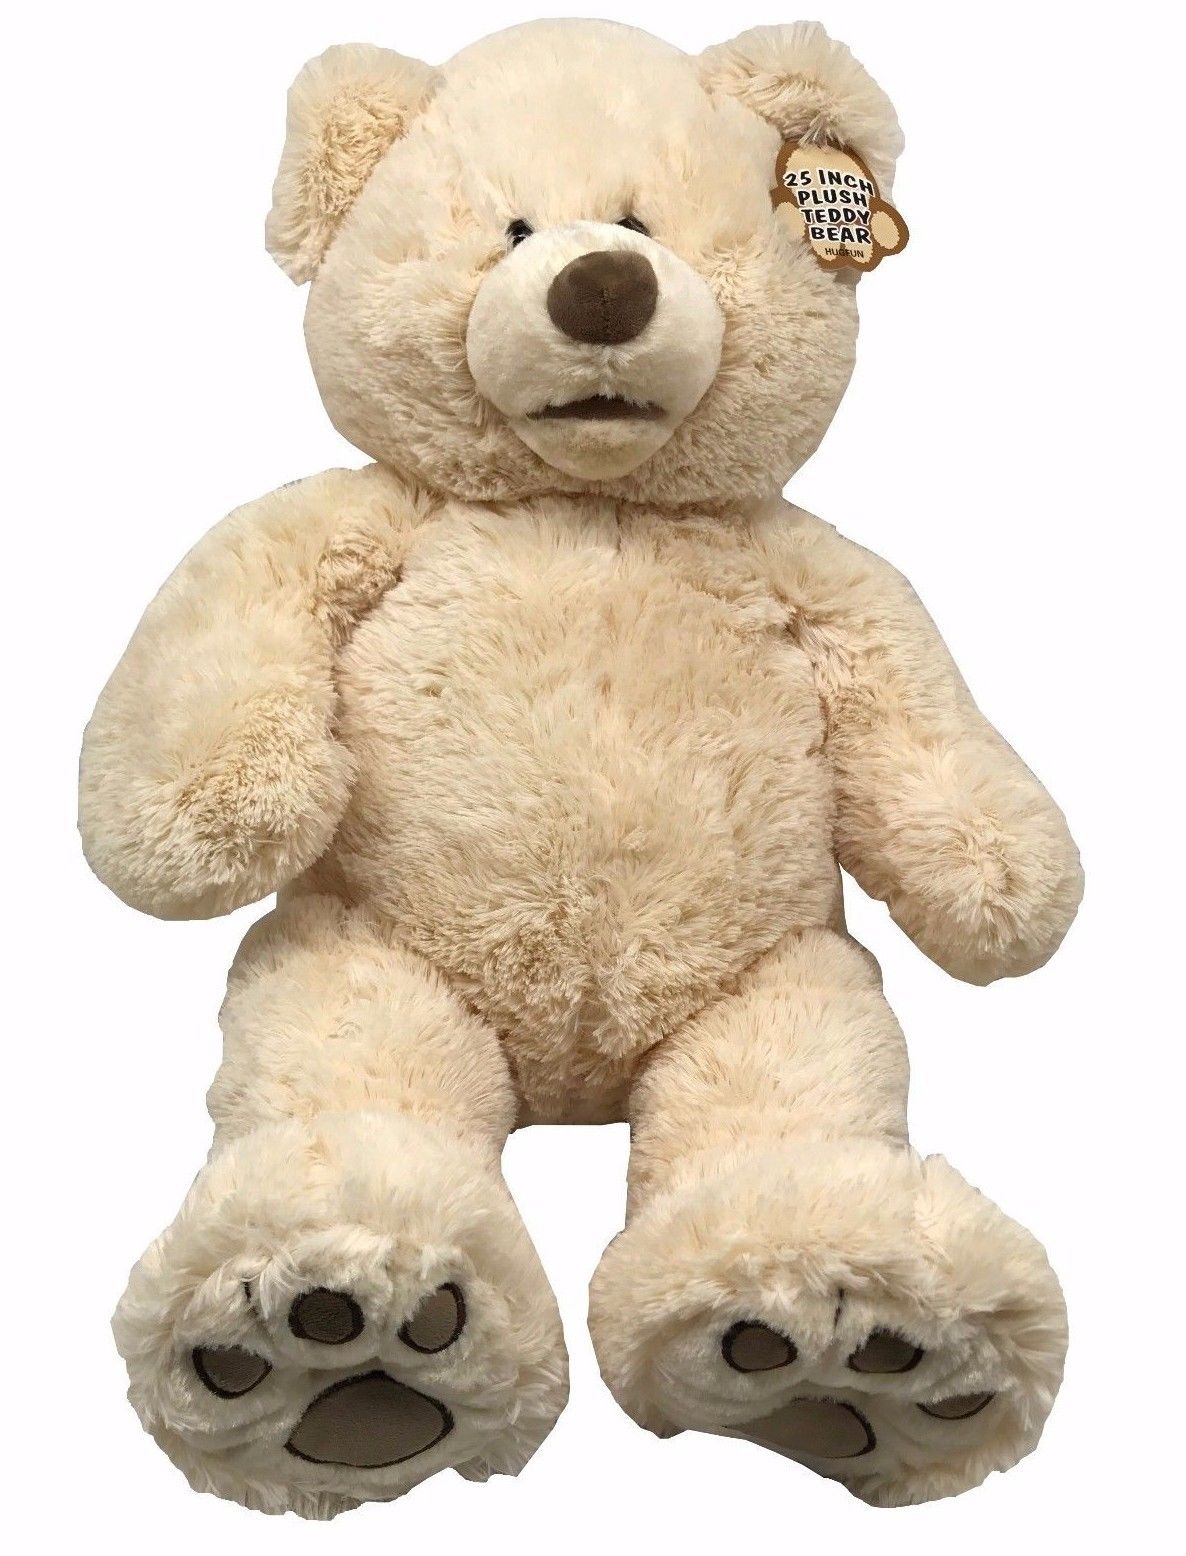 25 inch teddy bear